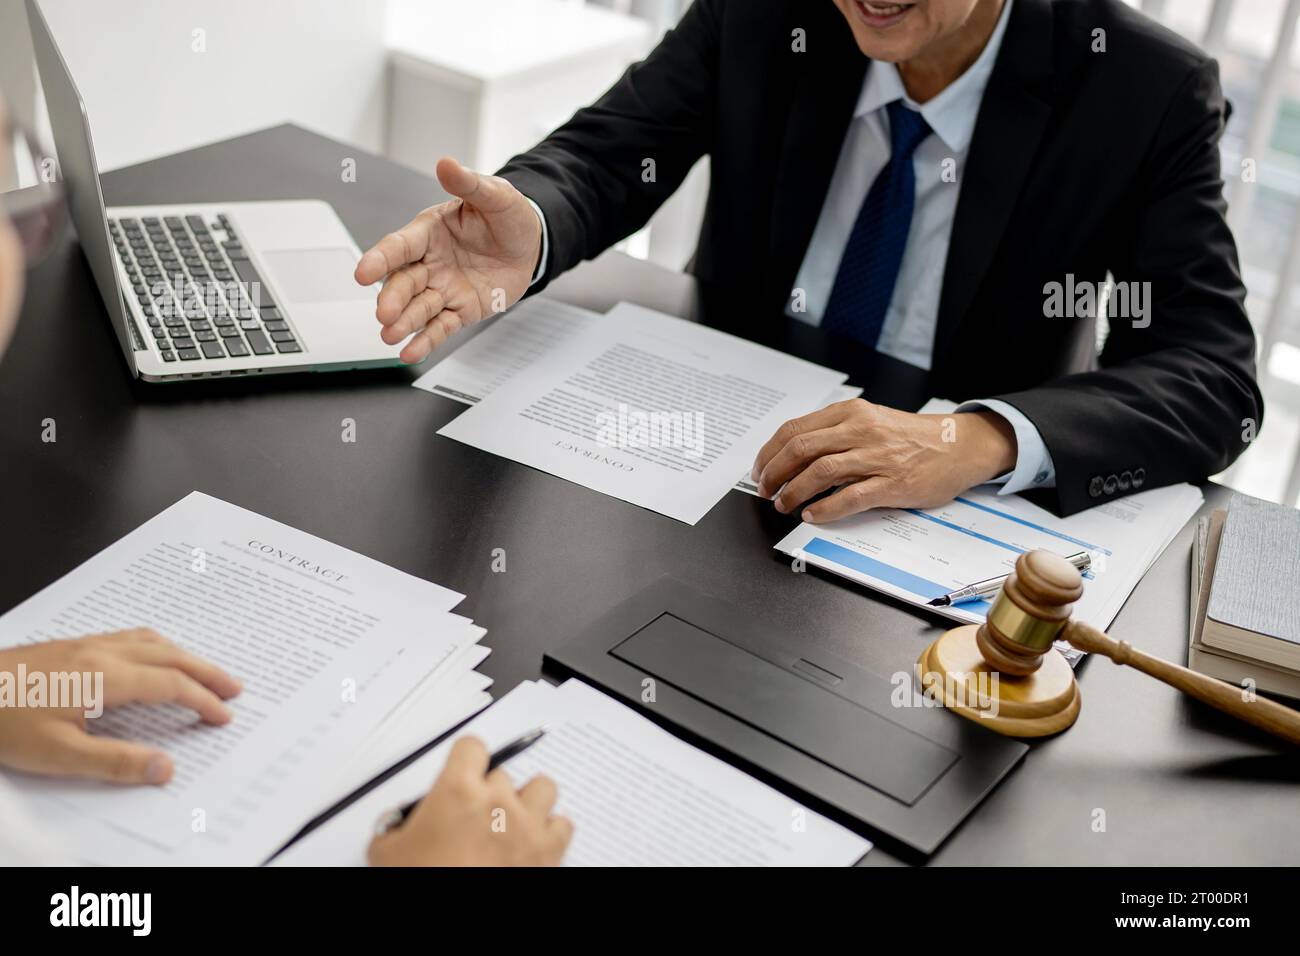 Rechtsanwalt Legal Counsel legt dem Mandanten einen unterzeichneten Vertrag mit Gavel und Rechtsrecht vor. Geschäftspartnerschaft zwischen justiz und Anwalt Stockfoto